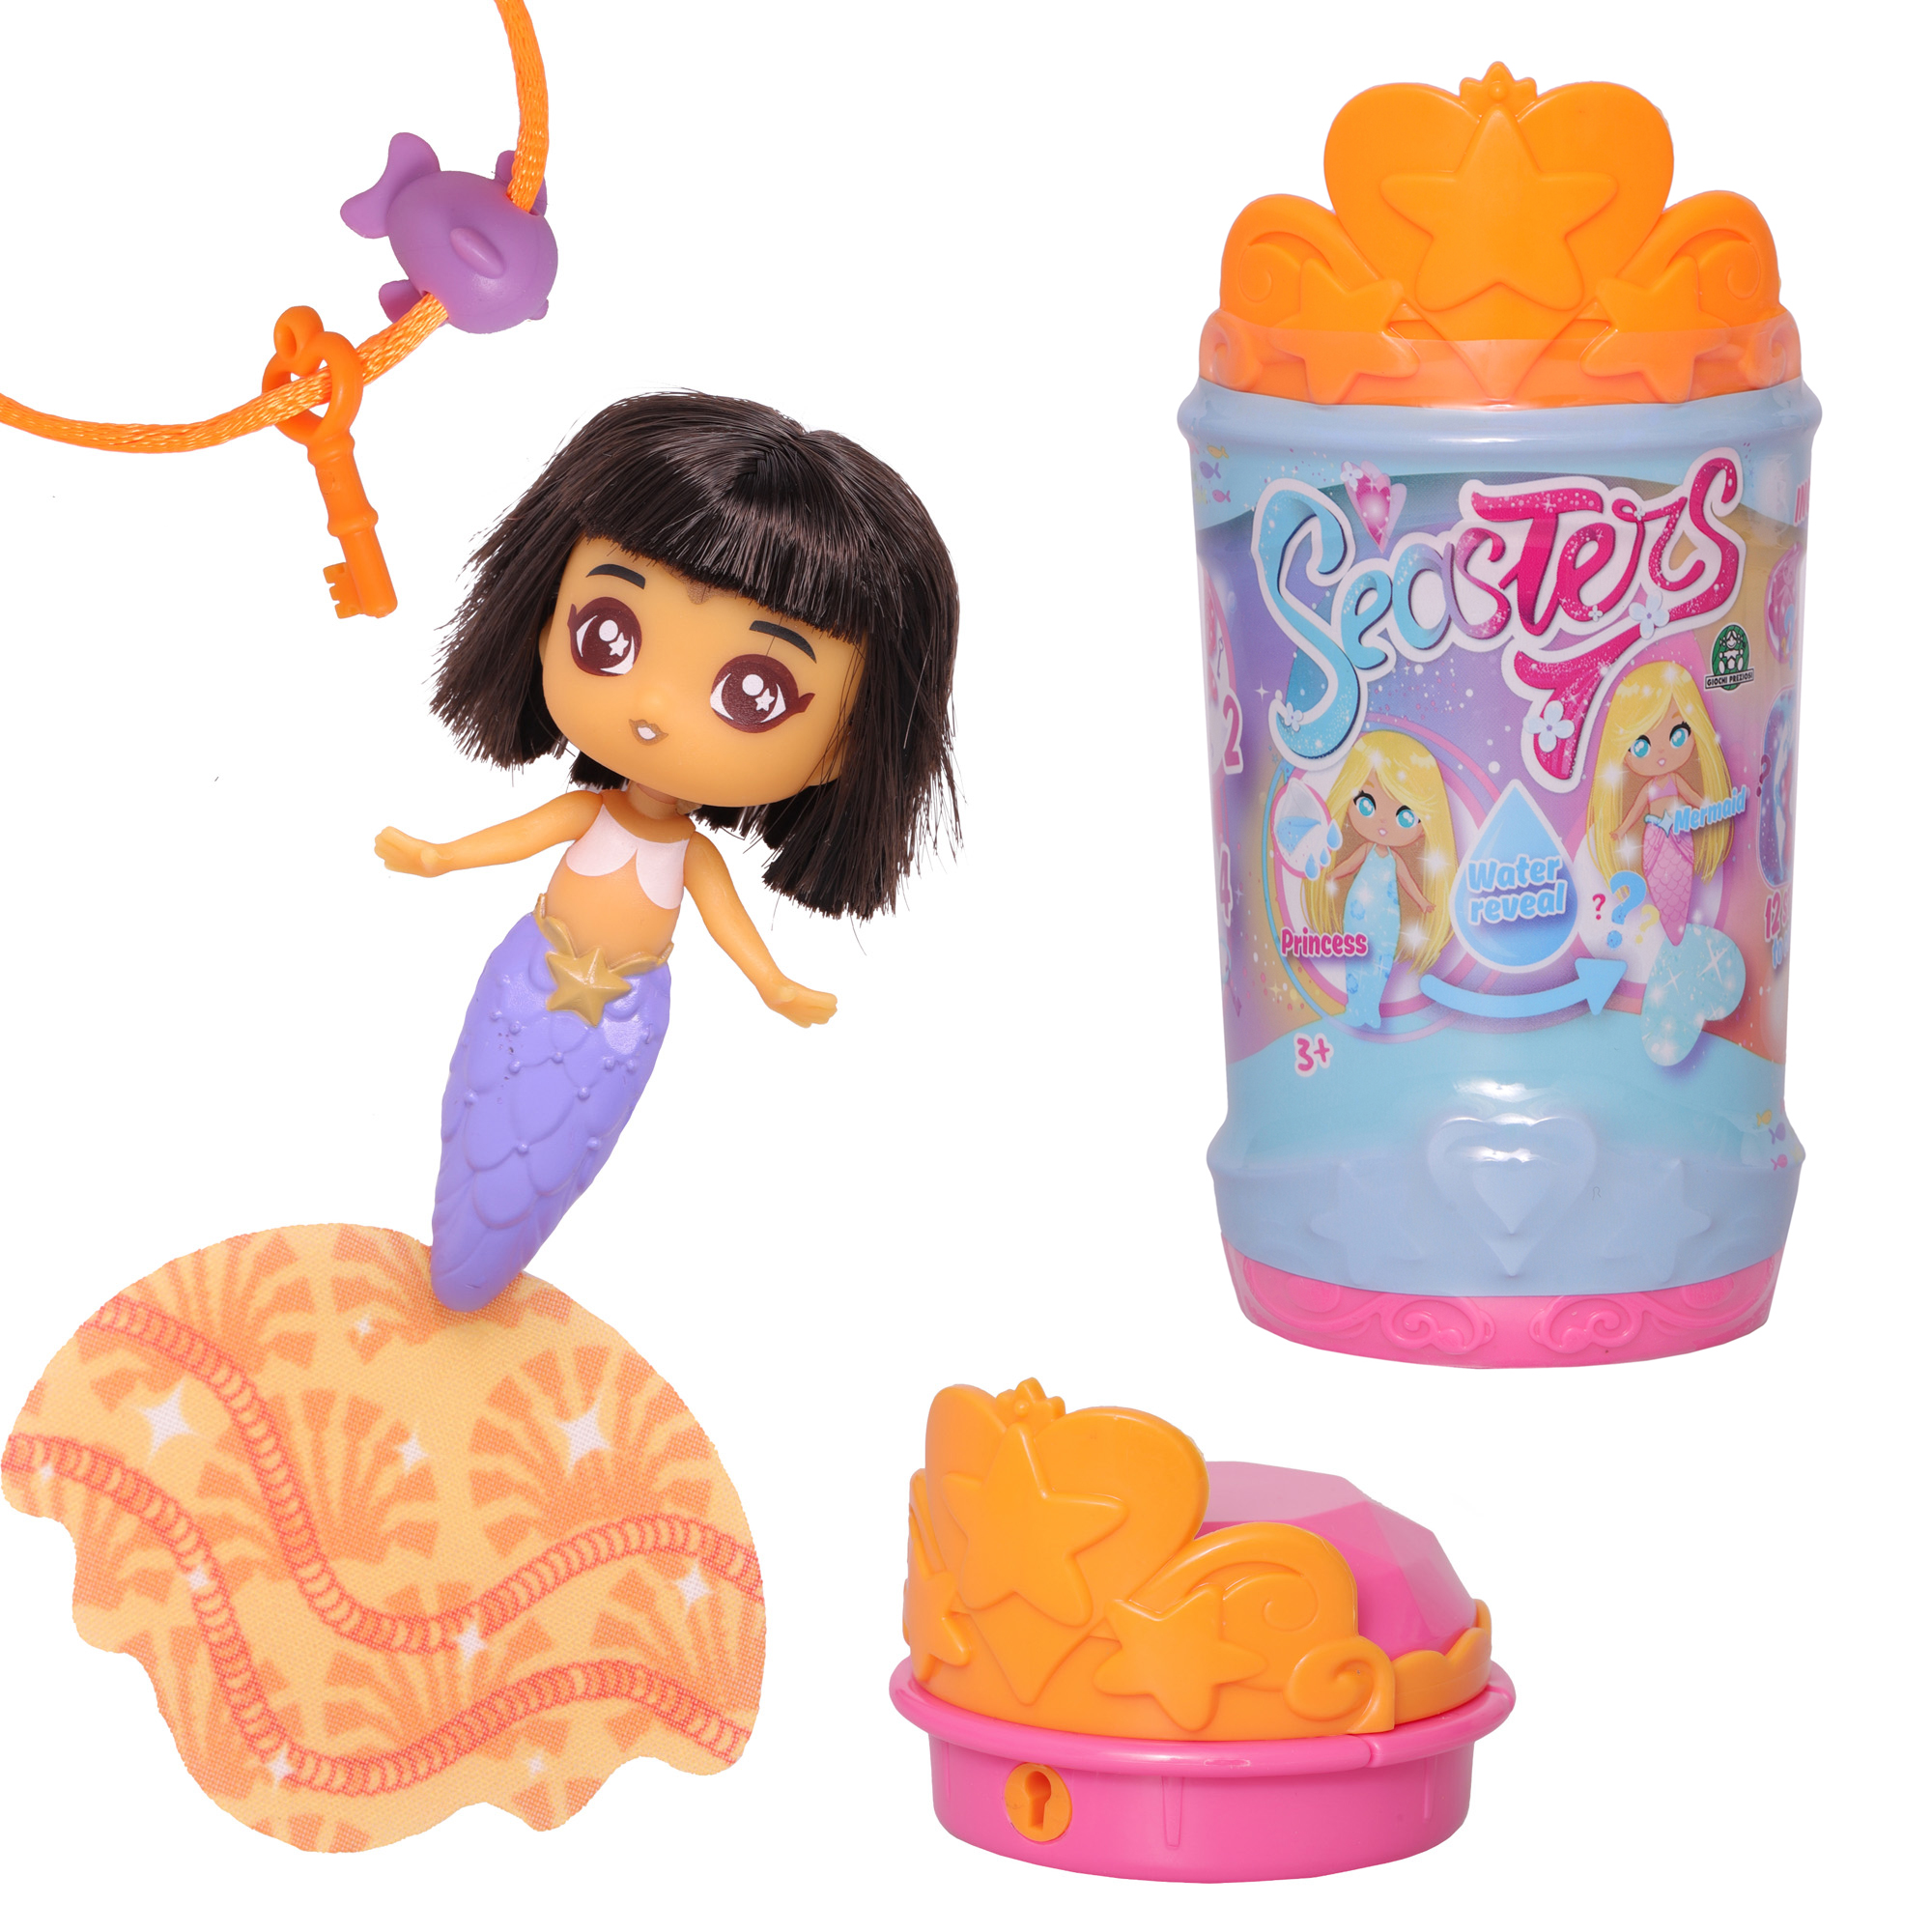 Кукла-сюрприз SEASTERS СиСтерс Принцесса русалка Лейла набор с аксессуарами и питомцем EAT15700 - фото 2